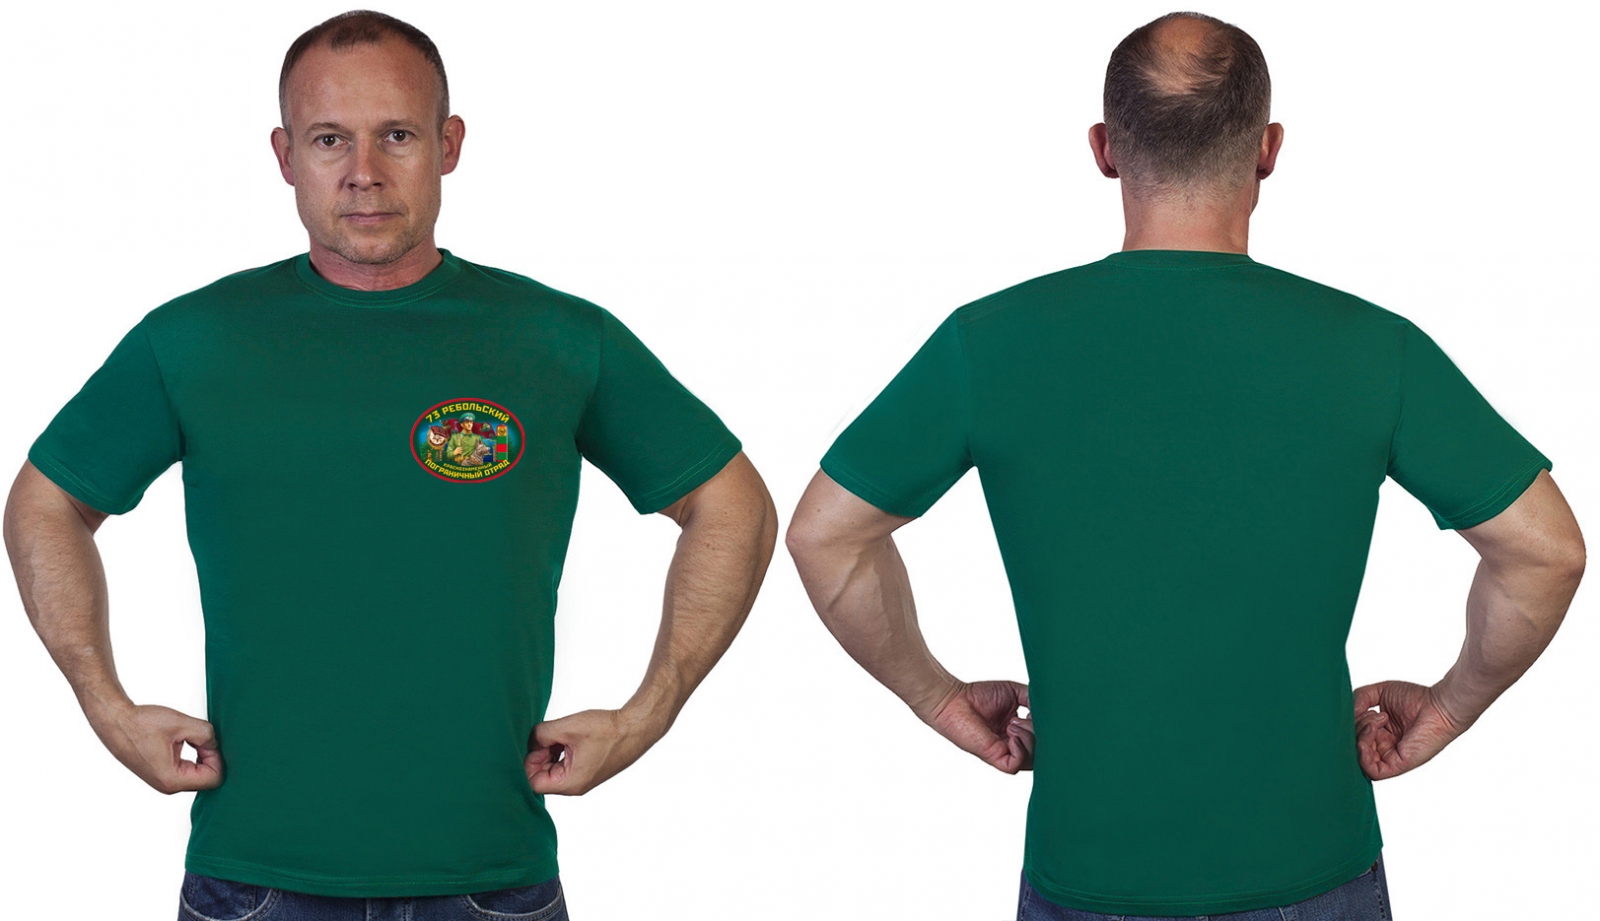 Зелёная футболка "73 Ребольского пограничного отряда" 